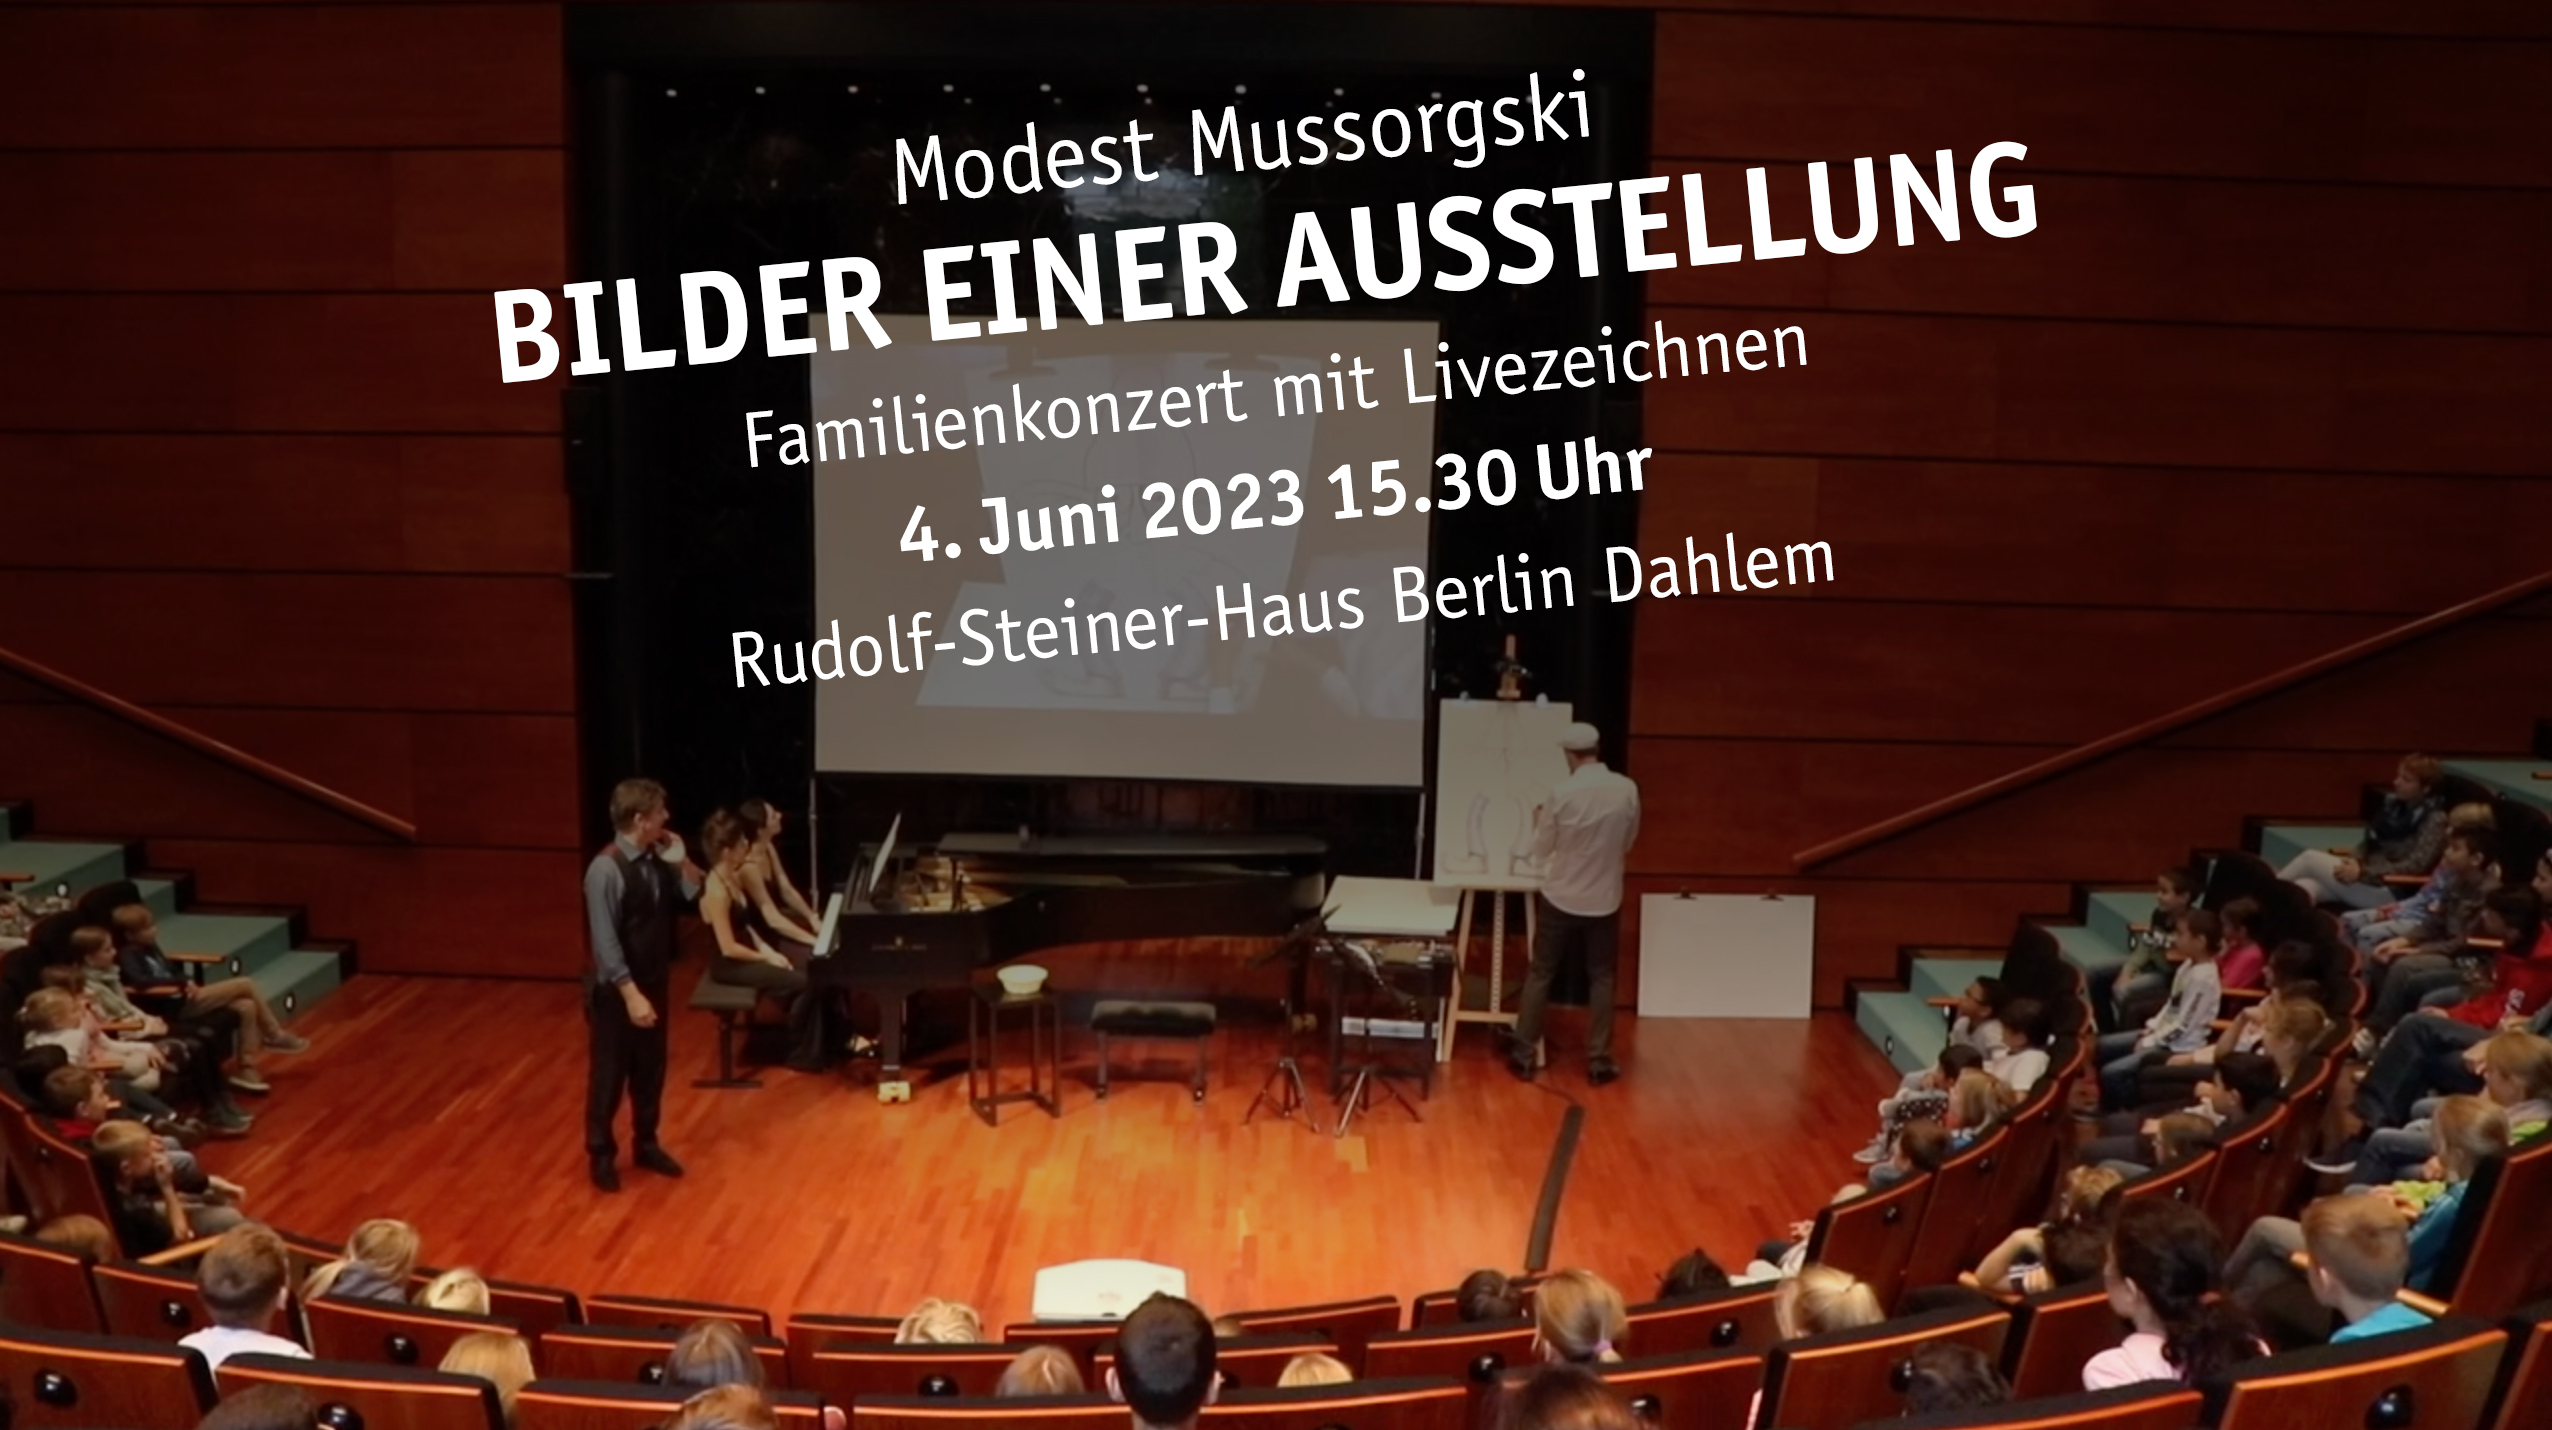 Veranstaltungsplakat für ein Familienkonzert mit Livezeichnen Bilder einer Ausstellung von Modest Moussorgski am 04.06.2023 im Rudolf Steiner Haus in Berlin Dahlem